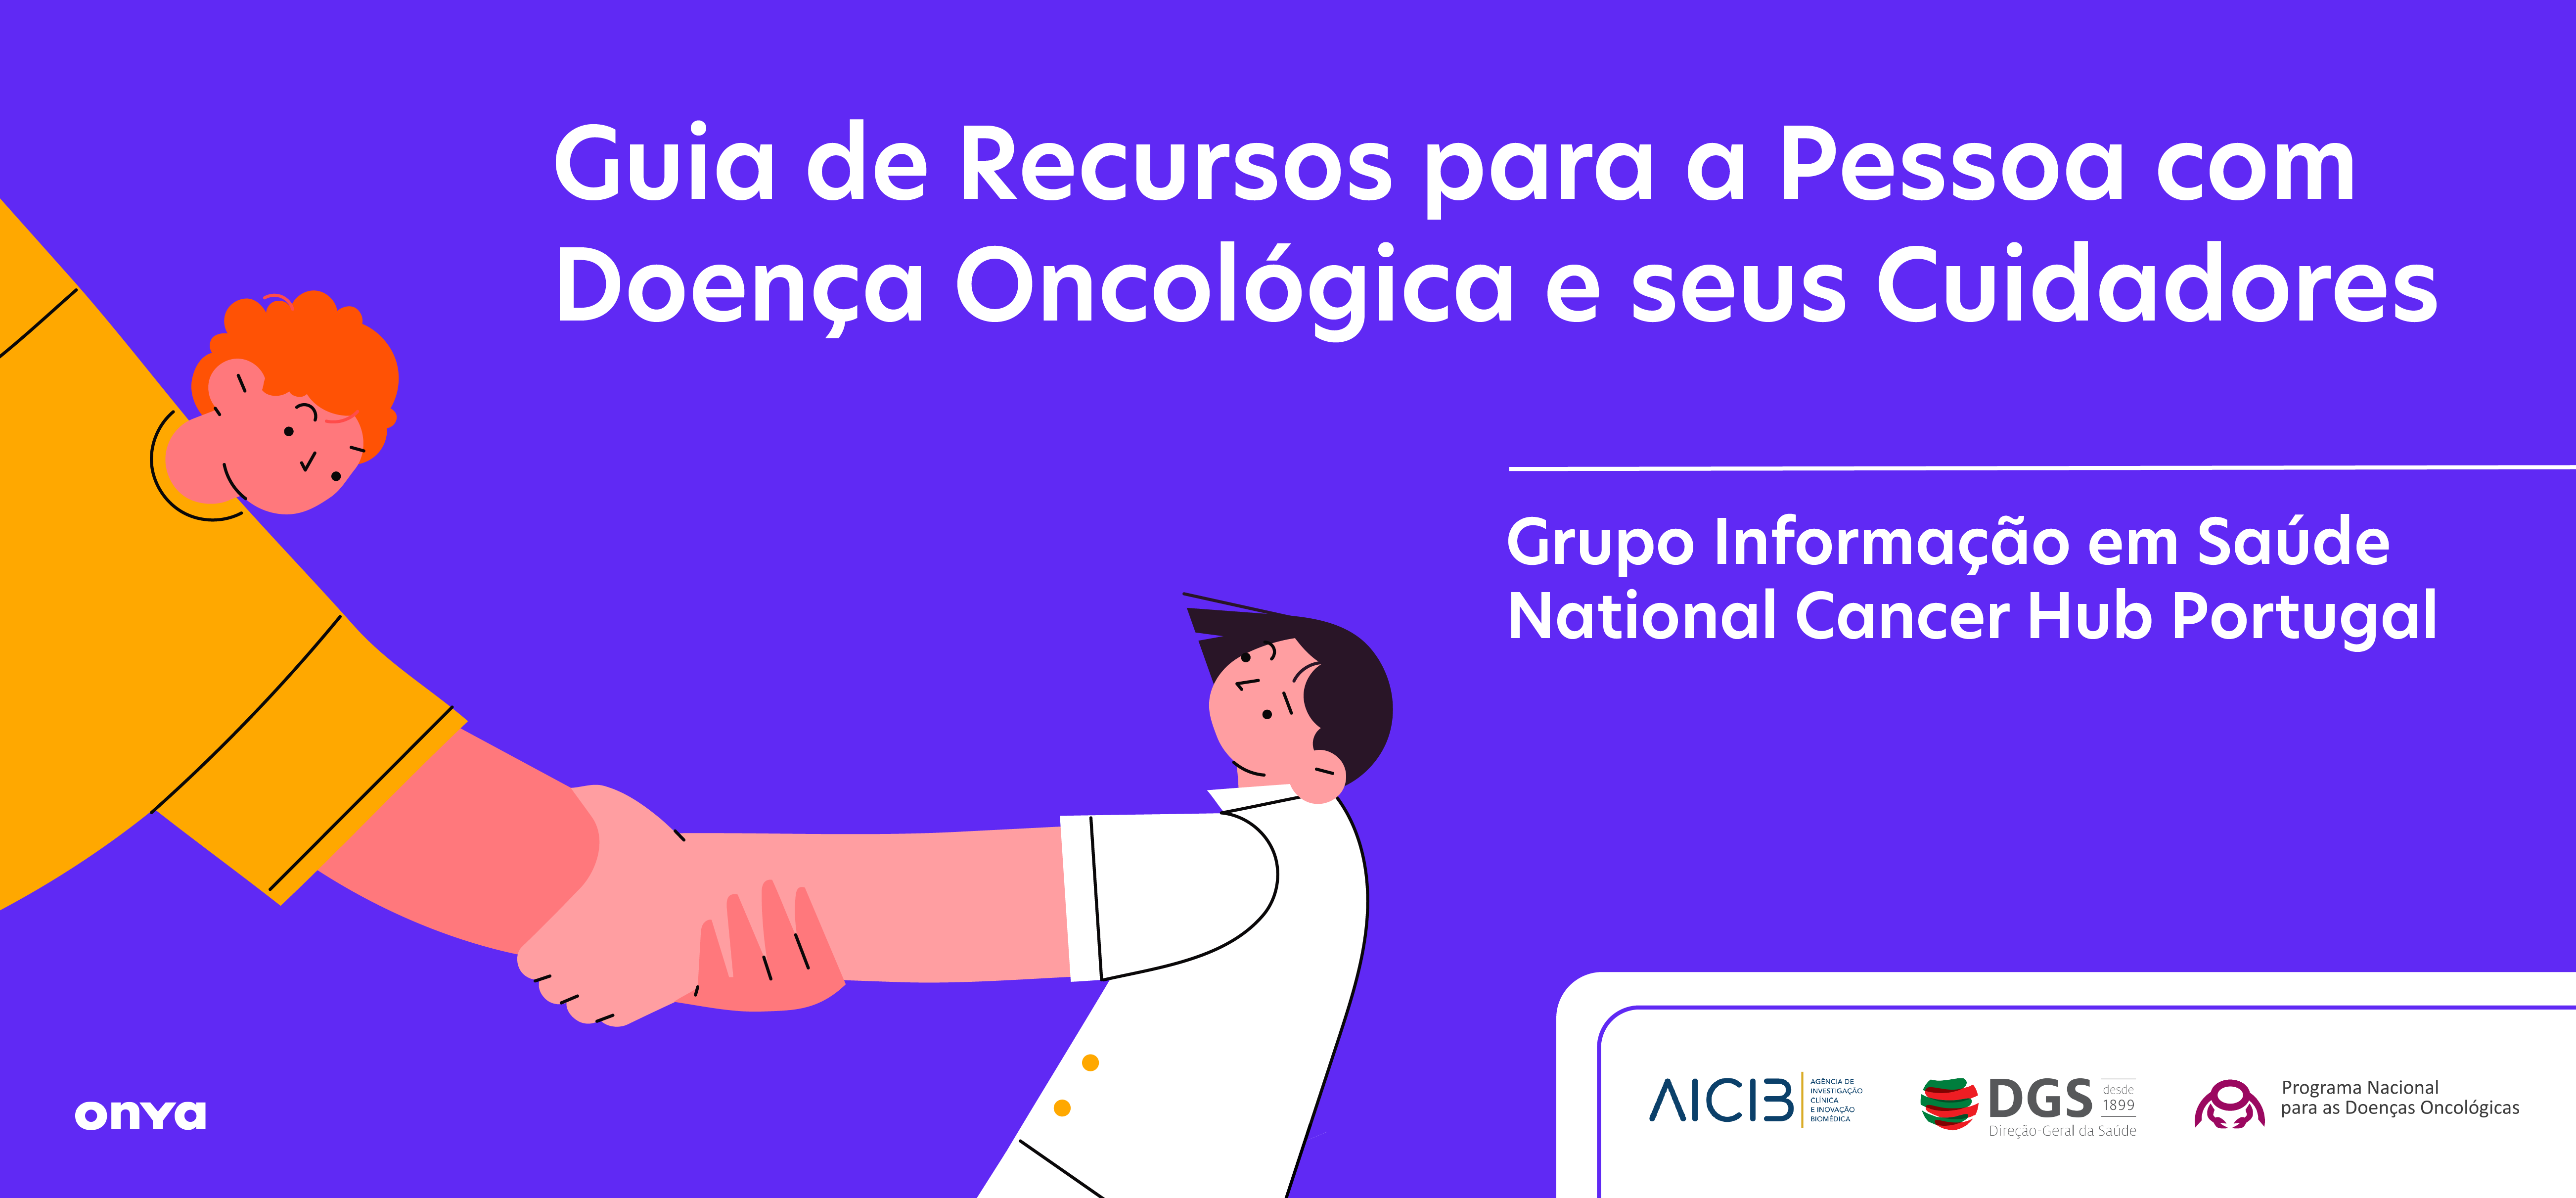 Guia de Recursos para a Pessoa com Doença Oncológica e seus Cuidadores conta com participação da presidente da SPLS